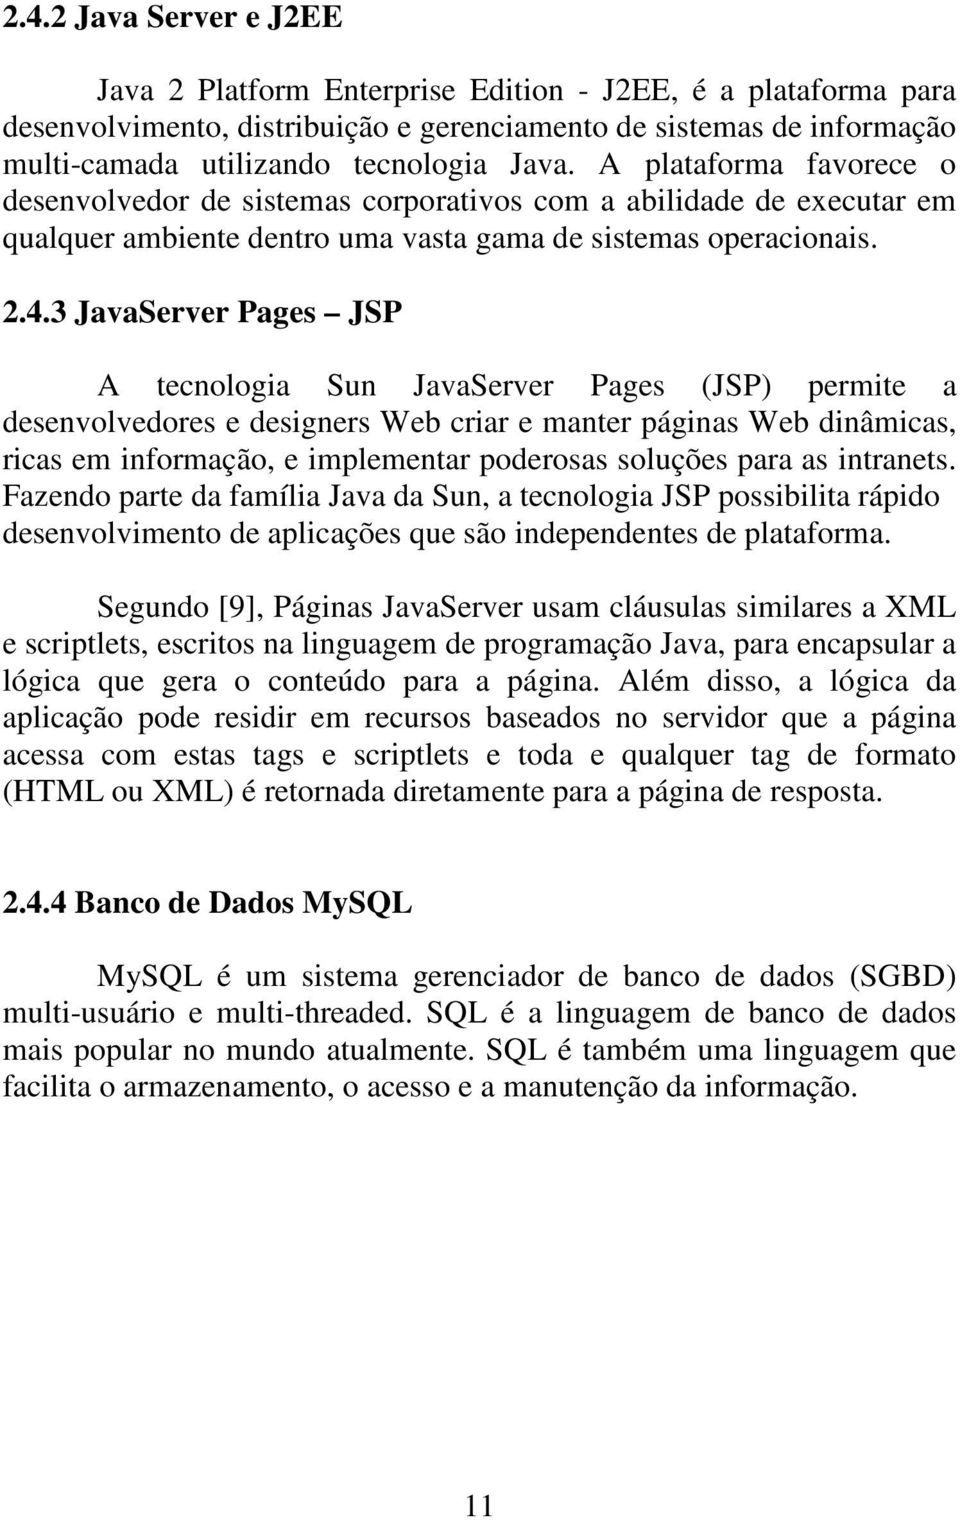 3 JavaServer Pages JSP A tecnologia Sun JavaServer Pages (JSP) permite a desenvolvedores e designers Web criar e manter páginas Web dinâmicas, ricas em informação, e implementar poderosas soluções